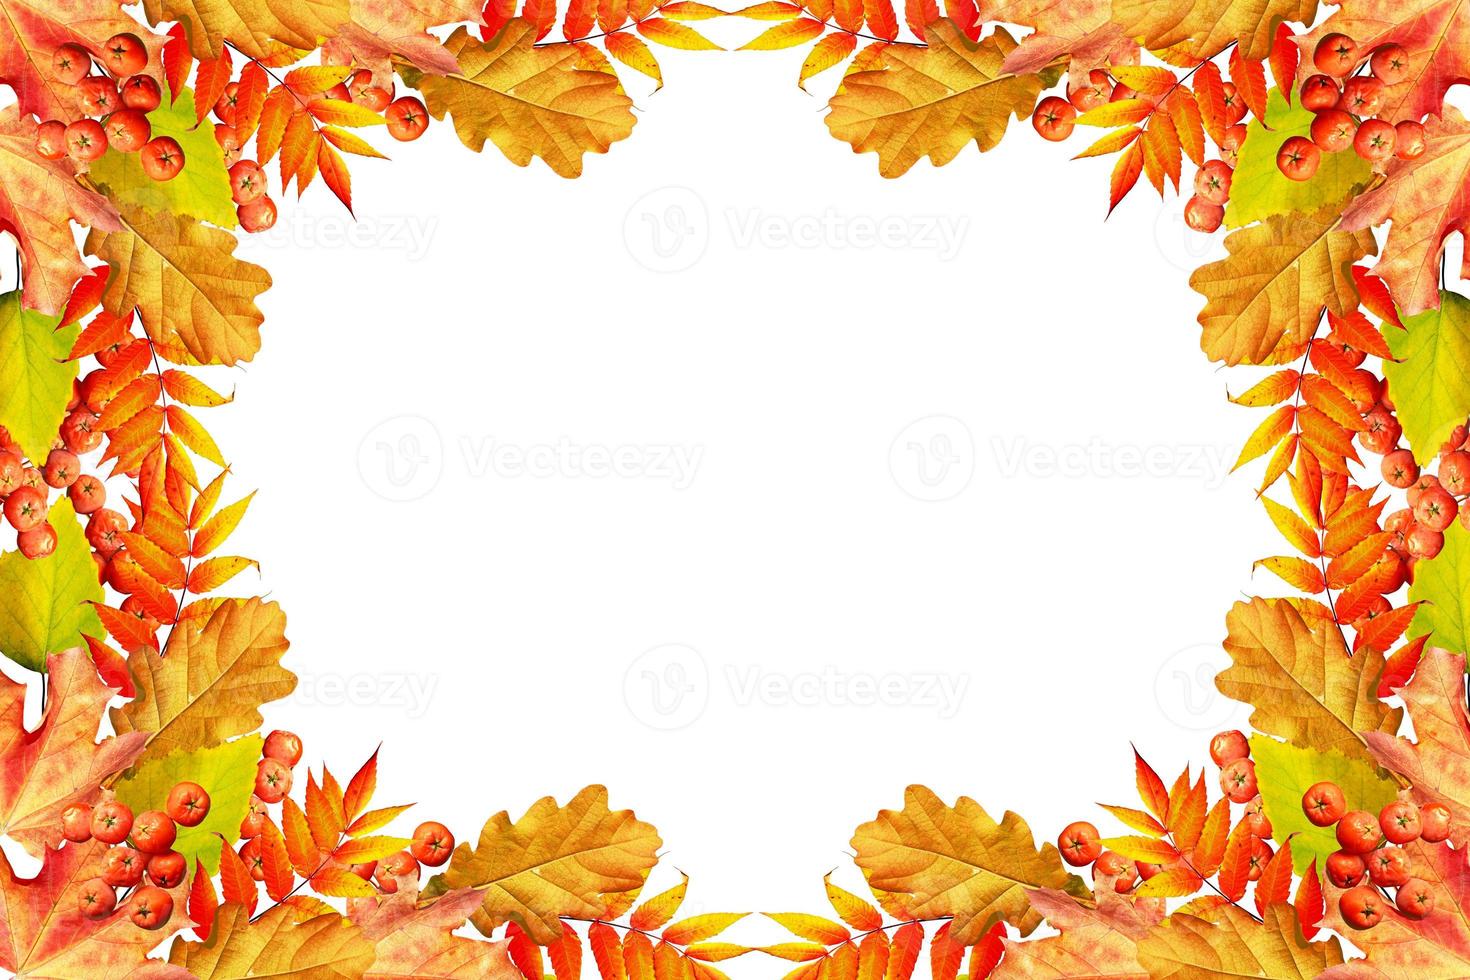 folhagem de outono colorida isolada no fundo branco. verão indiano. foto